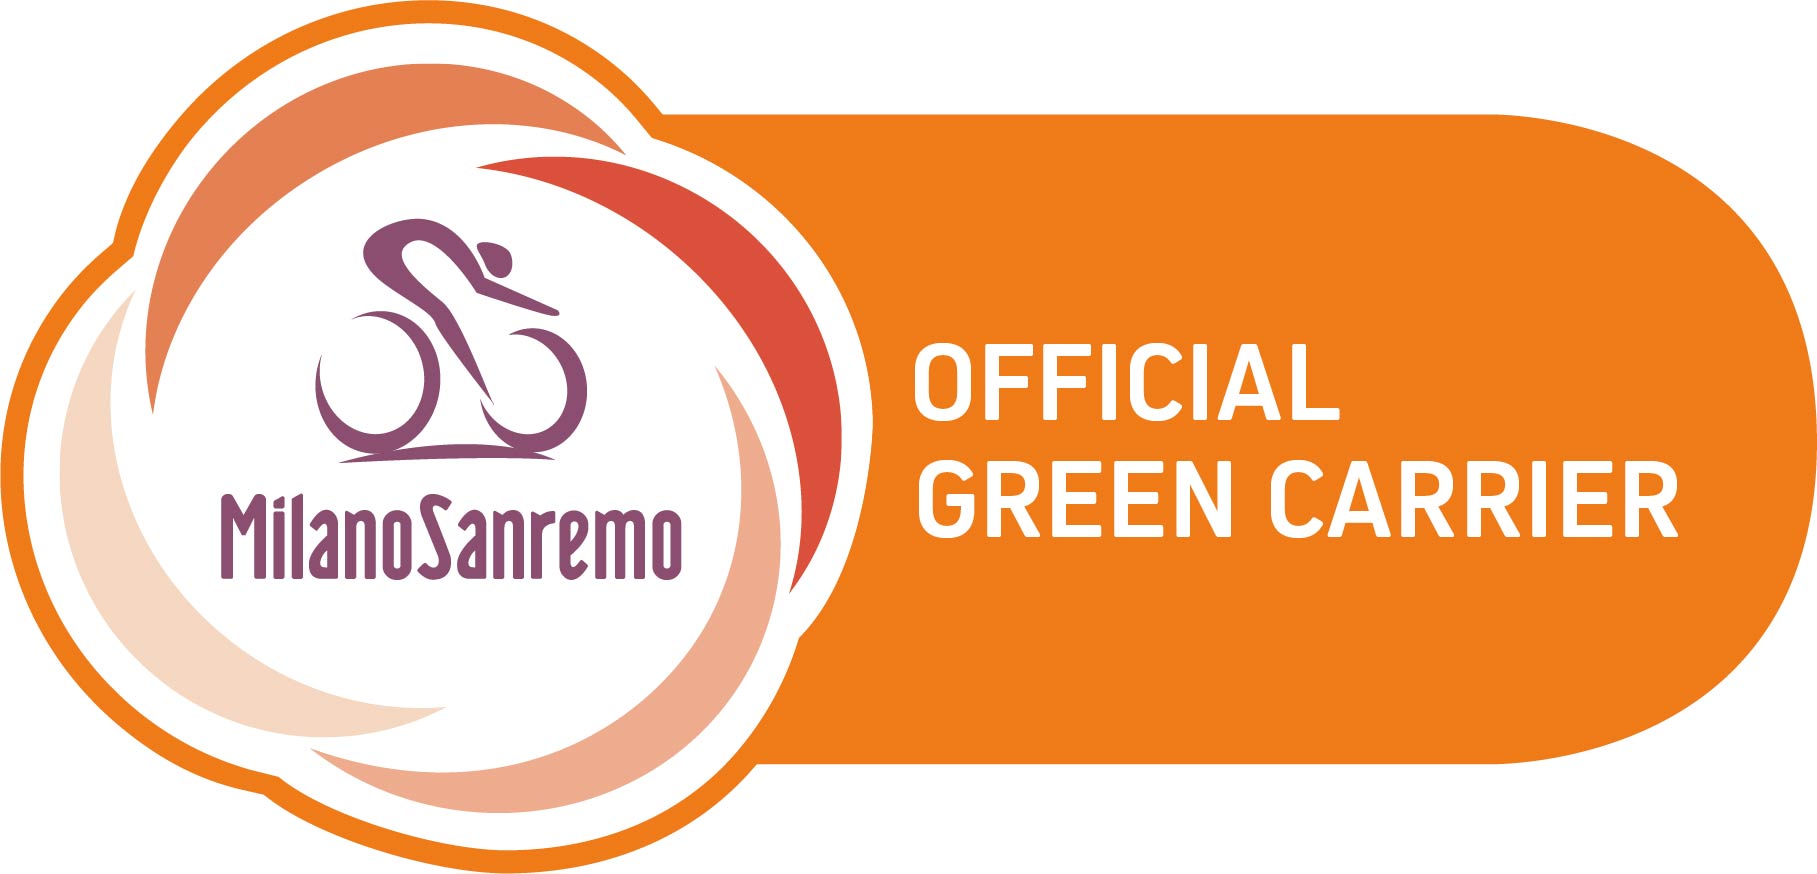 Il logo di Trenitalia Official Green Carrier della Milano-Sanremo